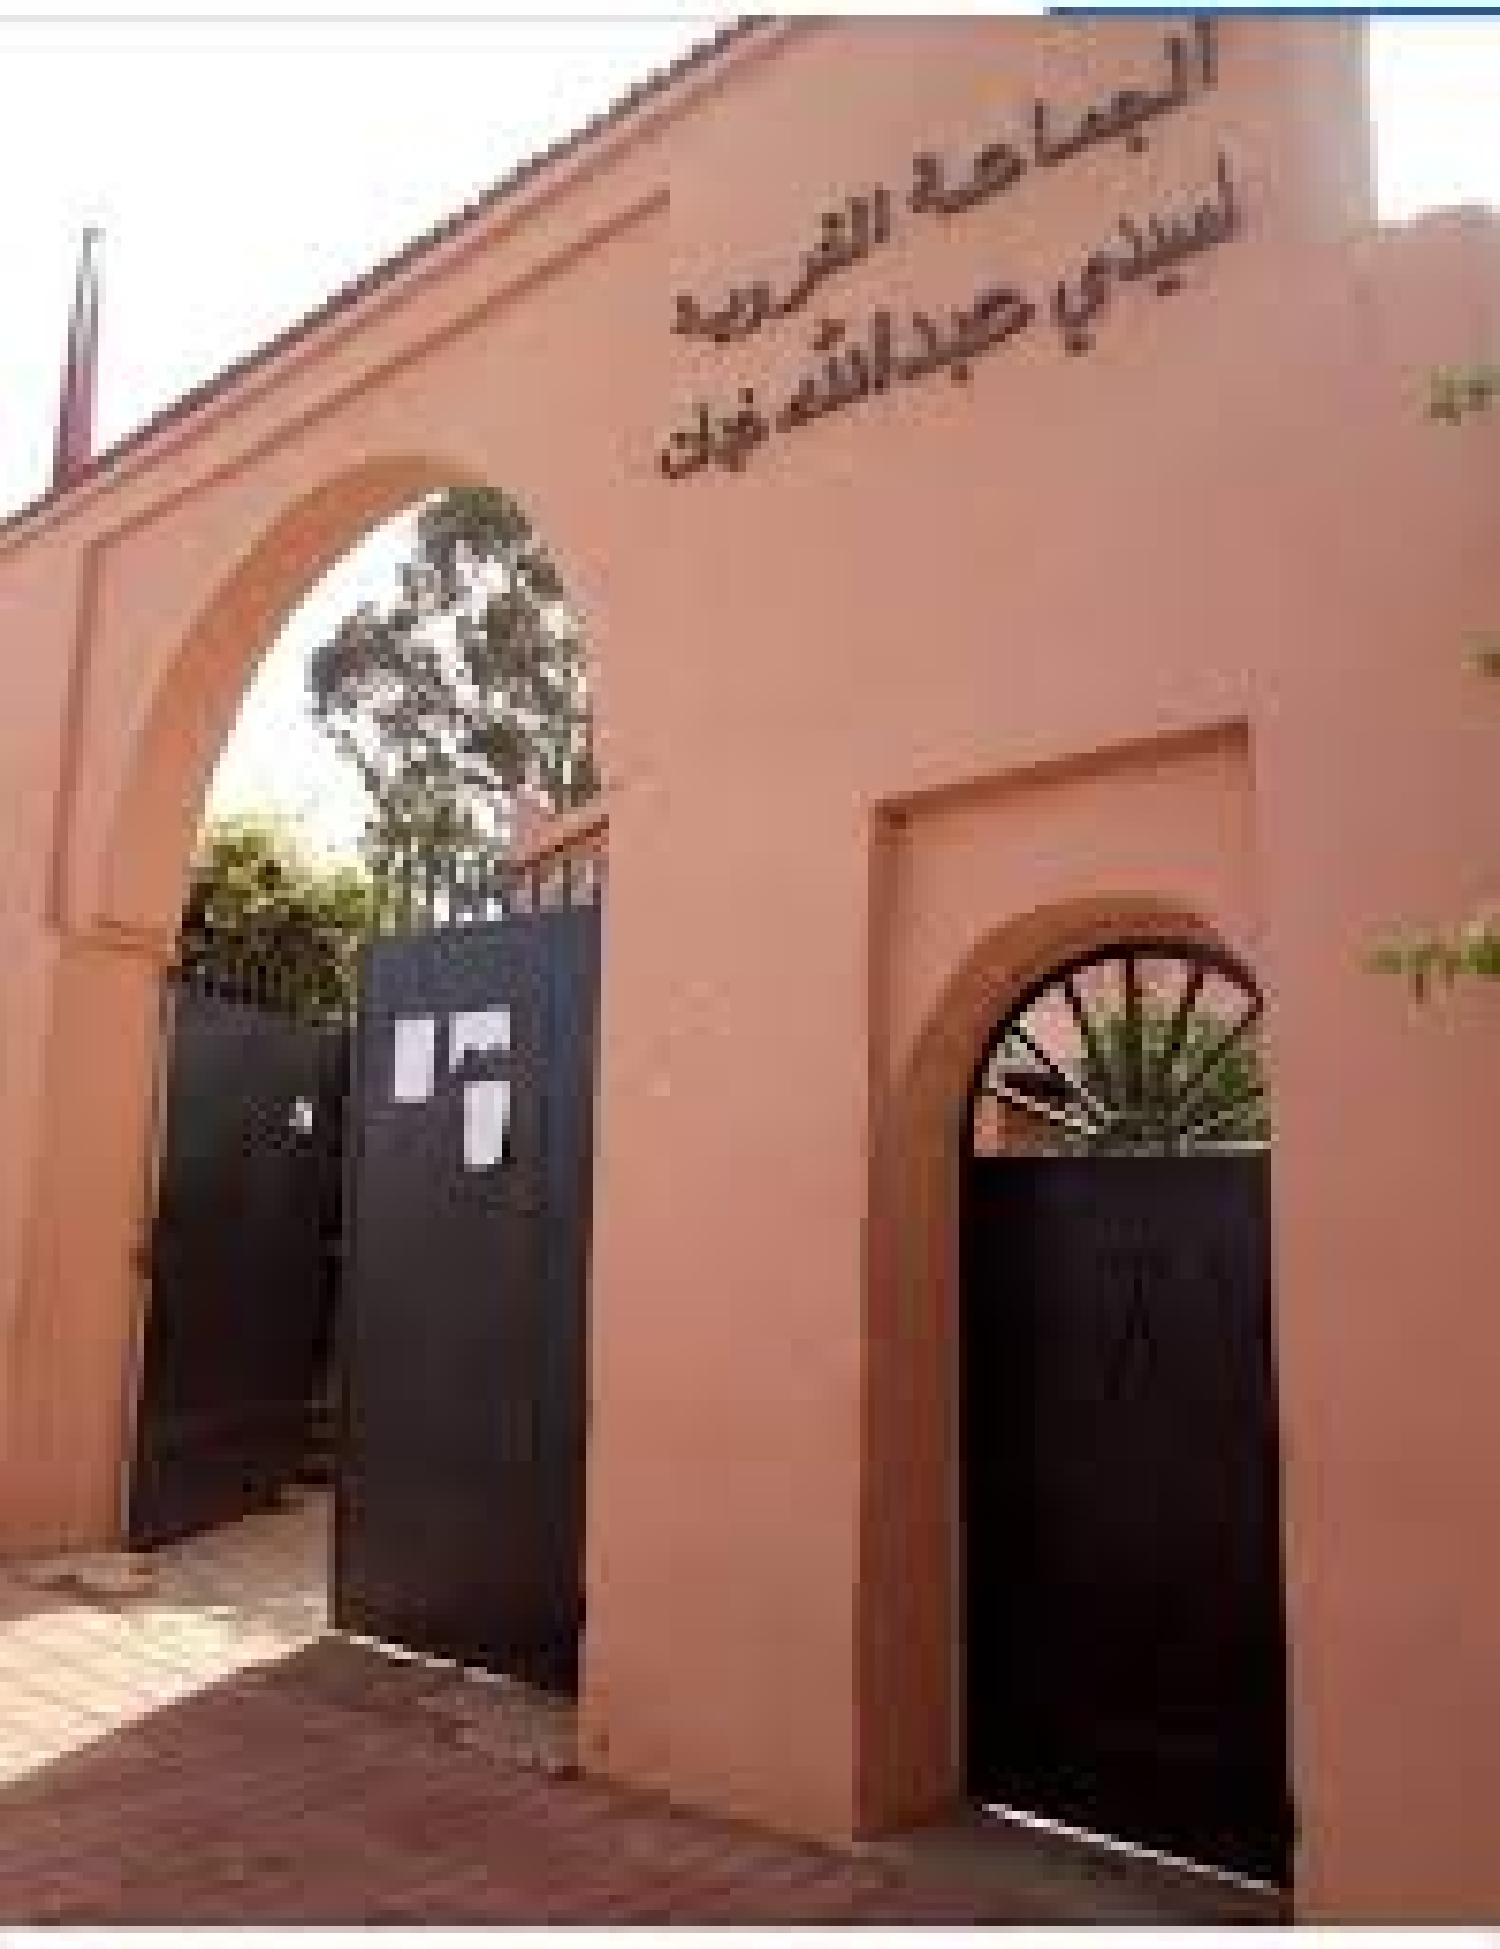 النصاب القانوني’ يؤجل دورة جماعة سيدي عبدالله غيات